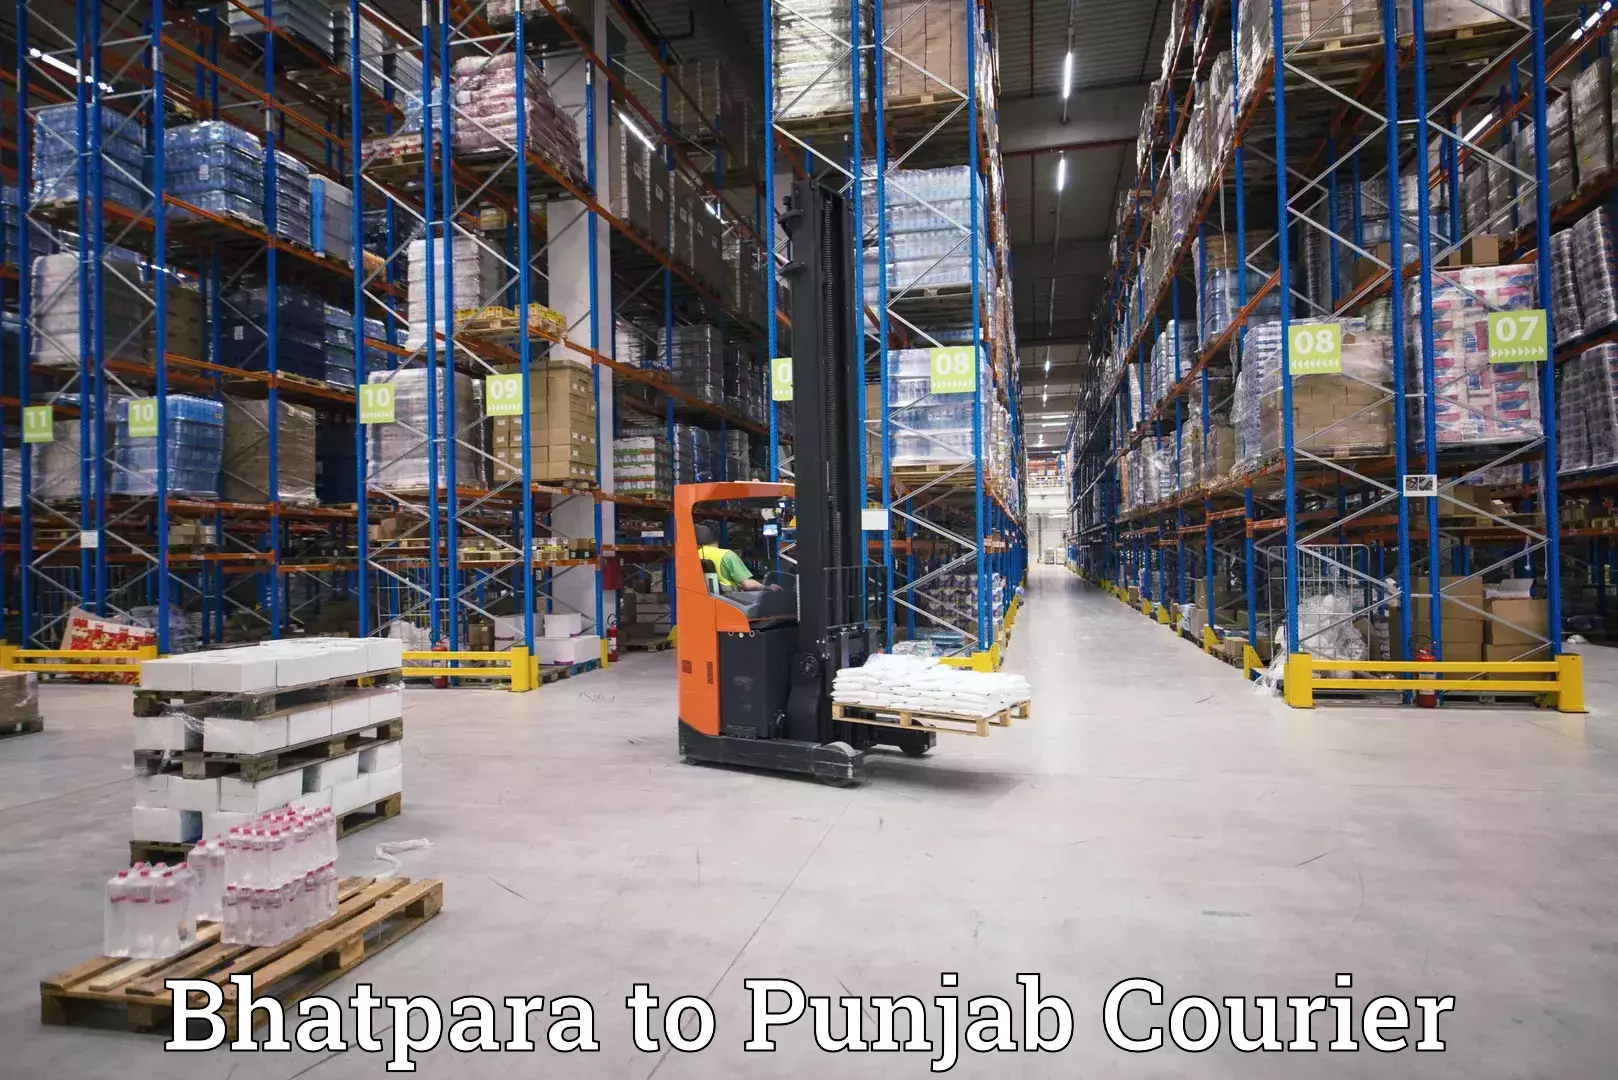 24/7 courier service Bhatpara to Ajnala